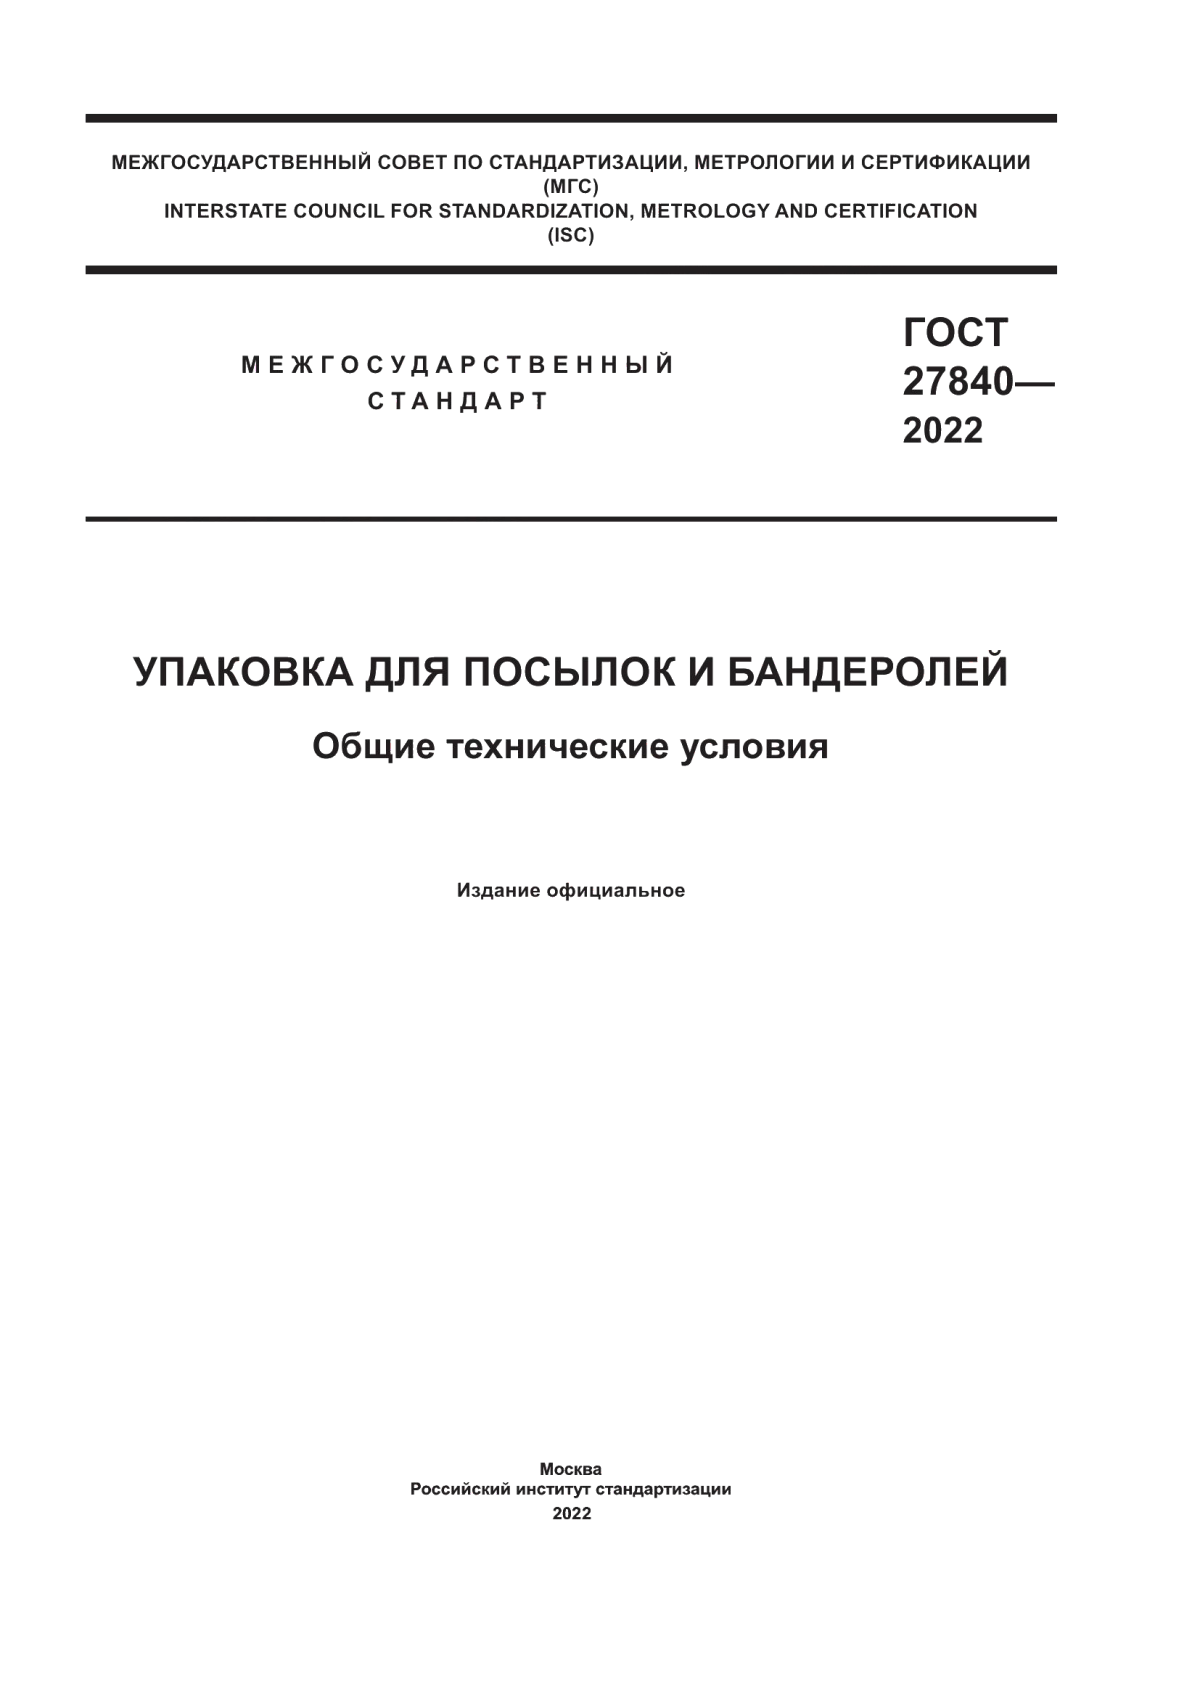 ГОСТ 27840-2022 Упаковка для посылок и бандеролей. Общие технические условия